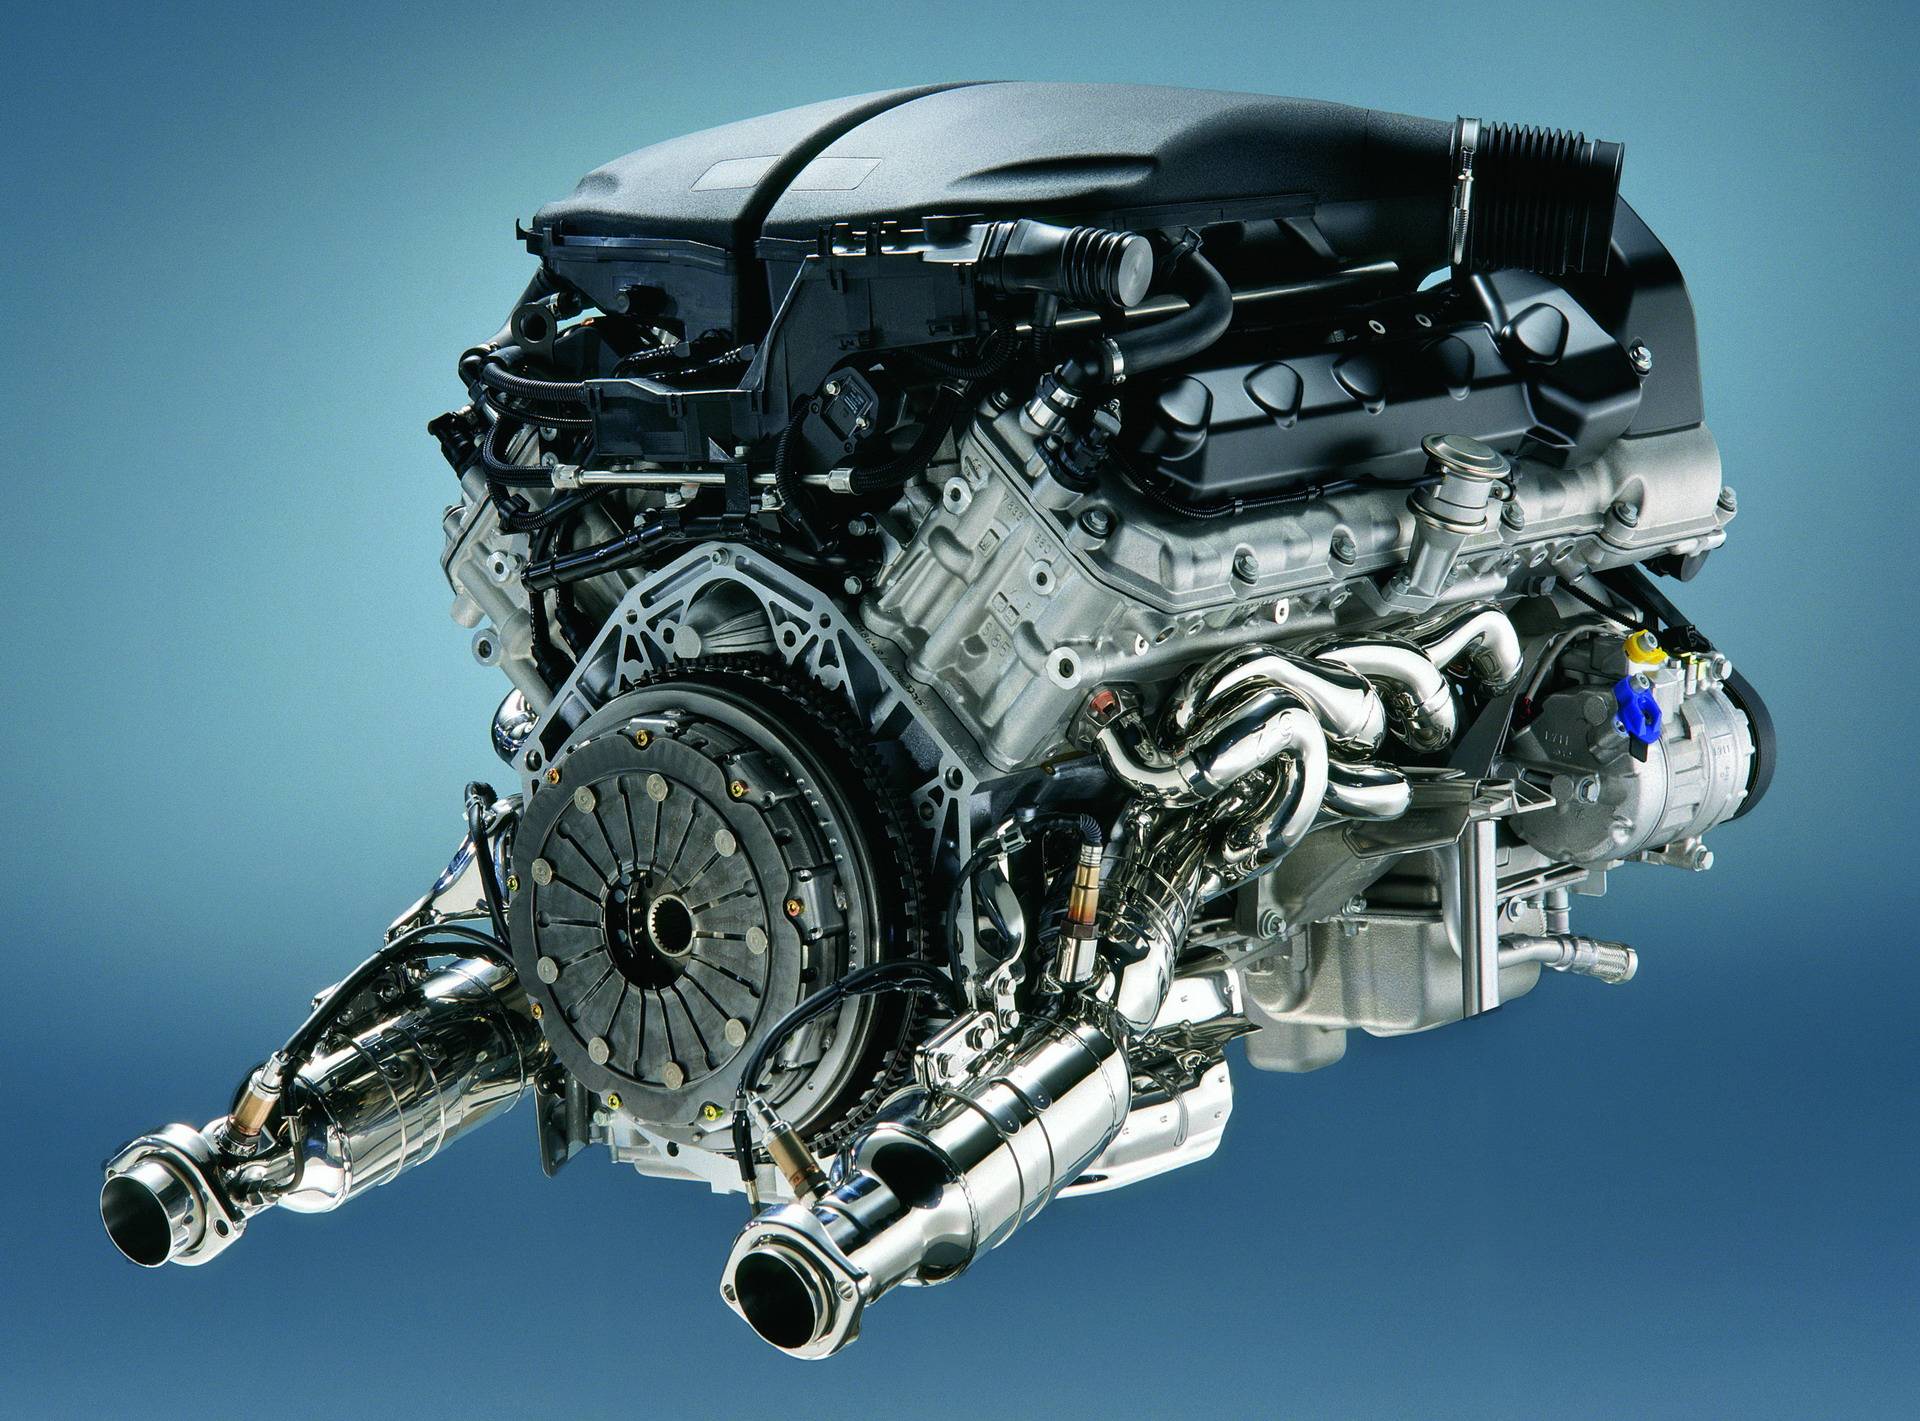 Двигатель BMW S85 V10 - легендарный мотор из Баварии 8